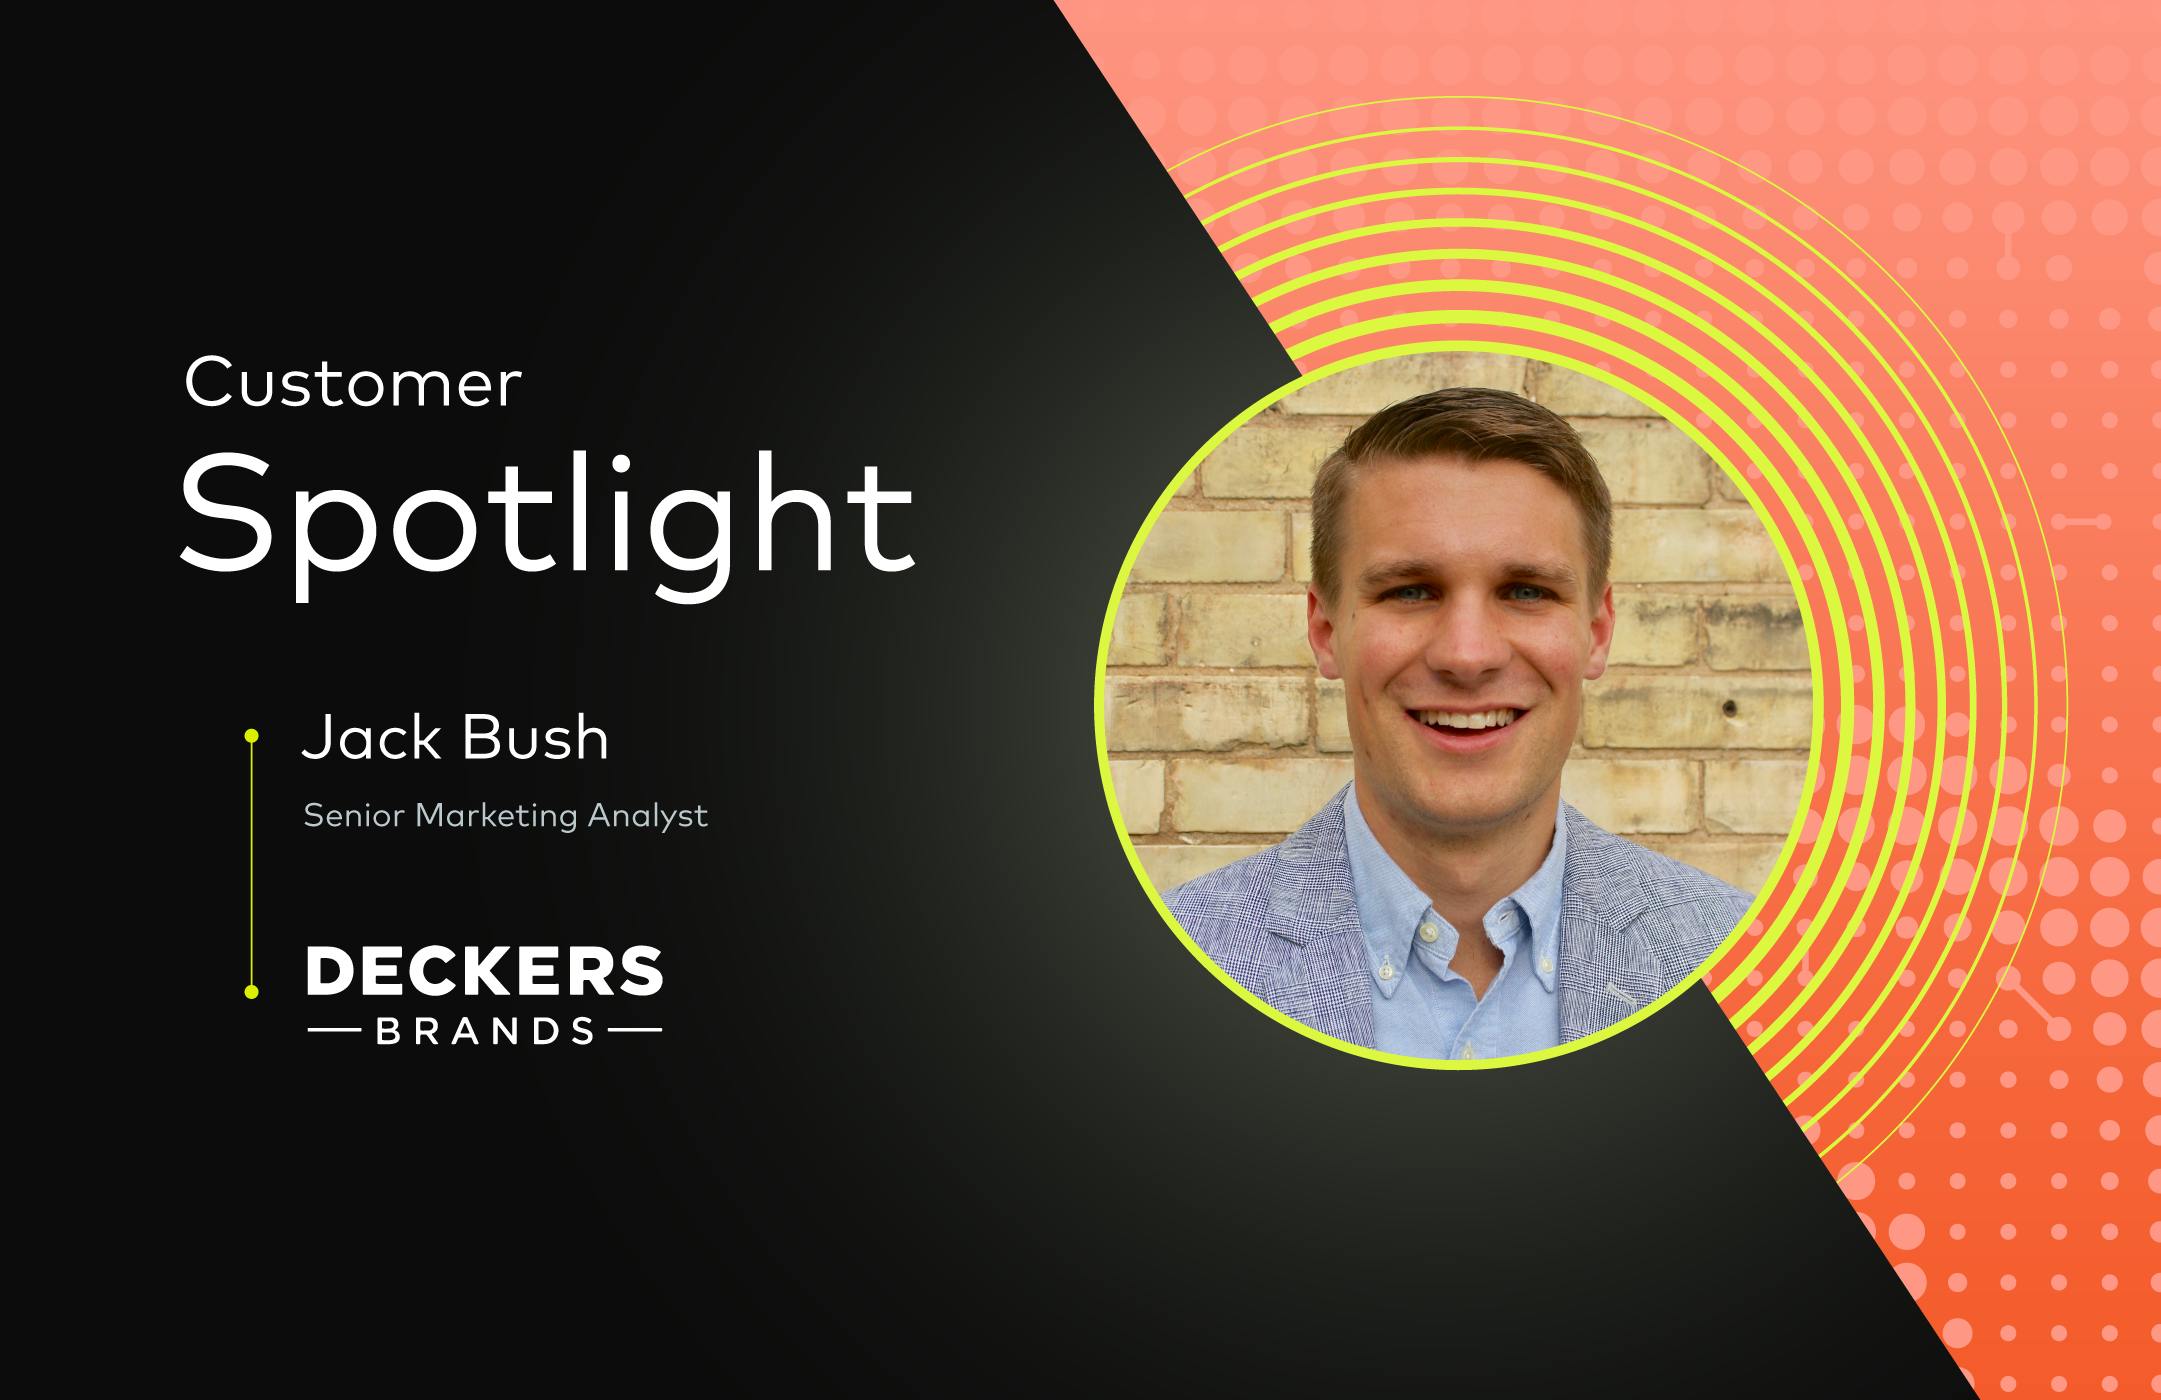 Customer Spotlight: Jack Bush from Deckers